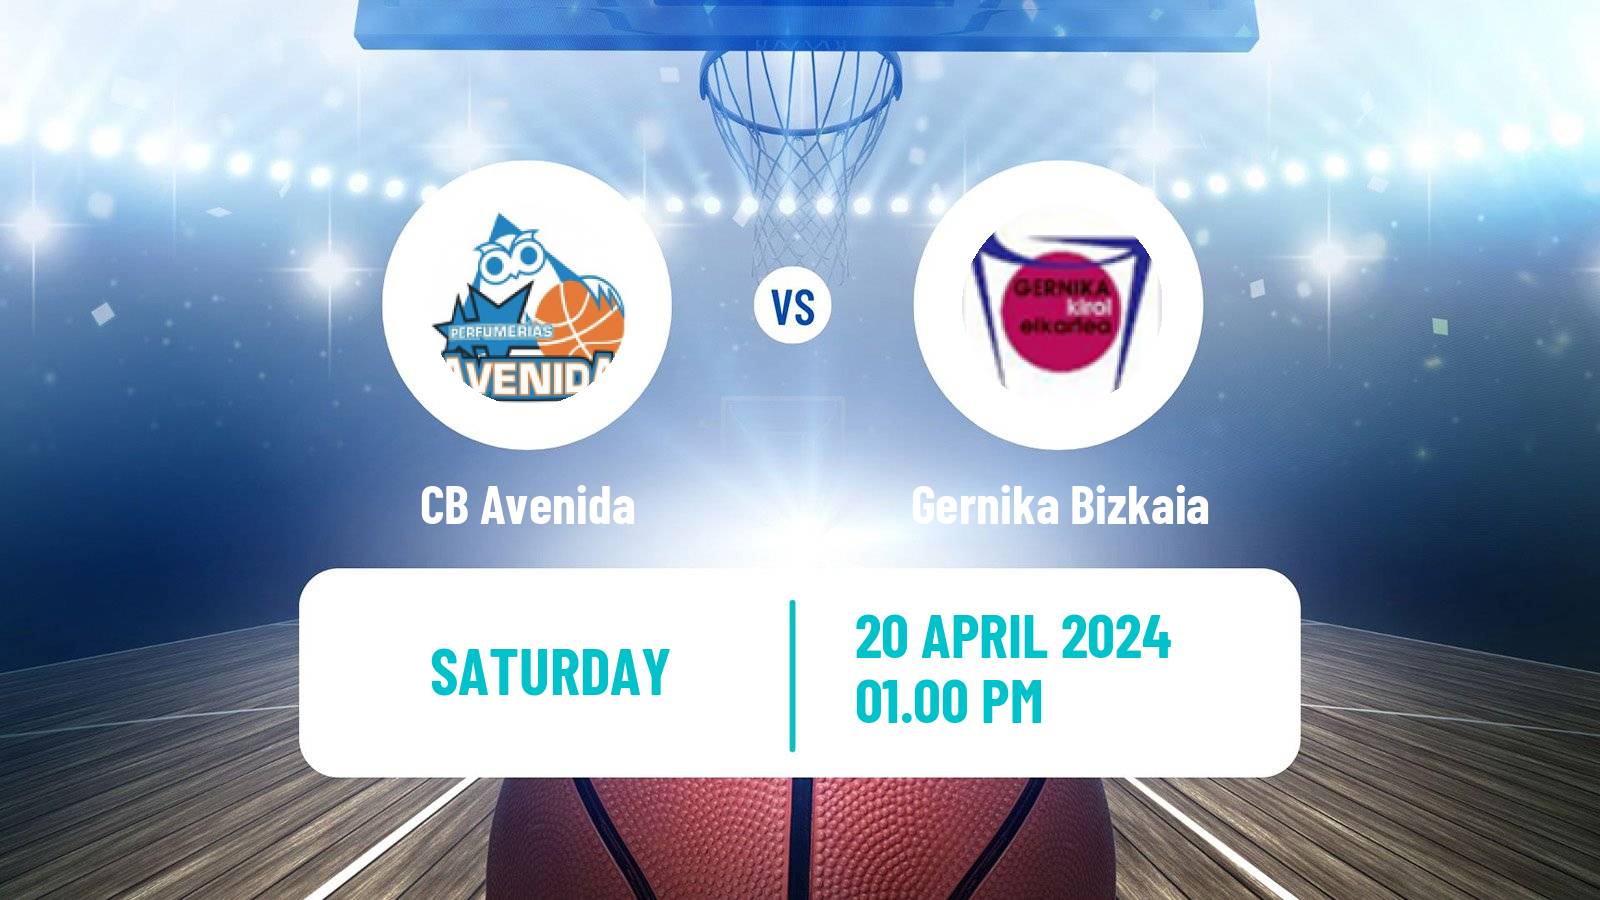 Basketball Spanish Liga Femenina Basketball CB Avenida - Gernika Bizkaia